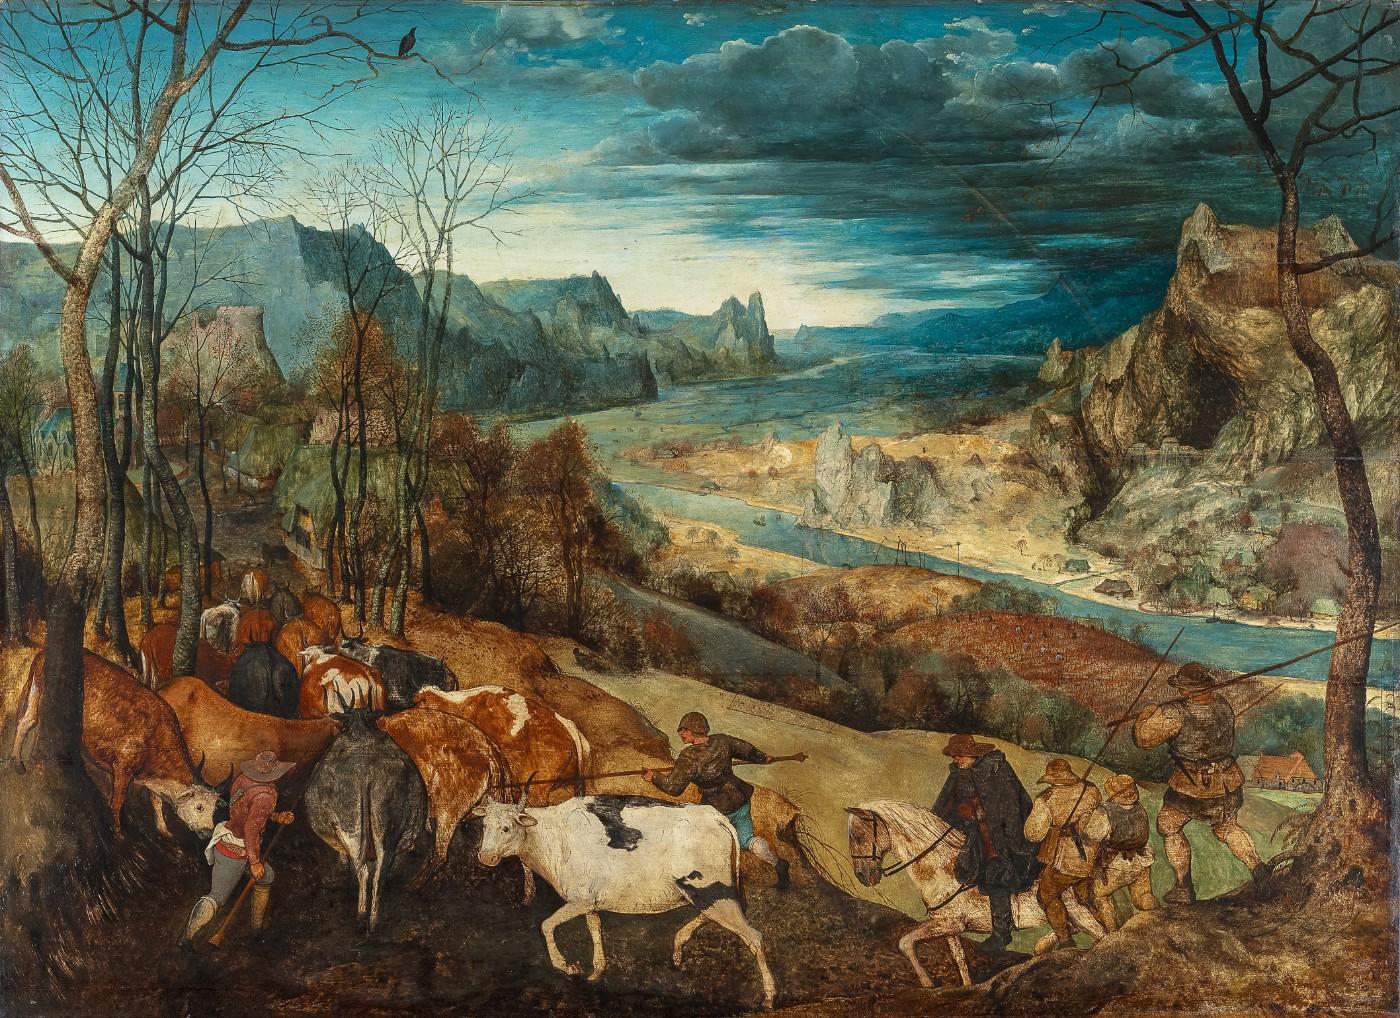 Pieter Bruegel the Elder, The Return of the Herd, 1565